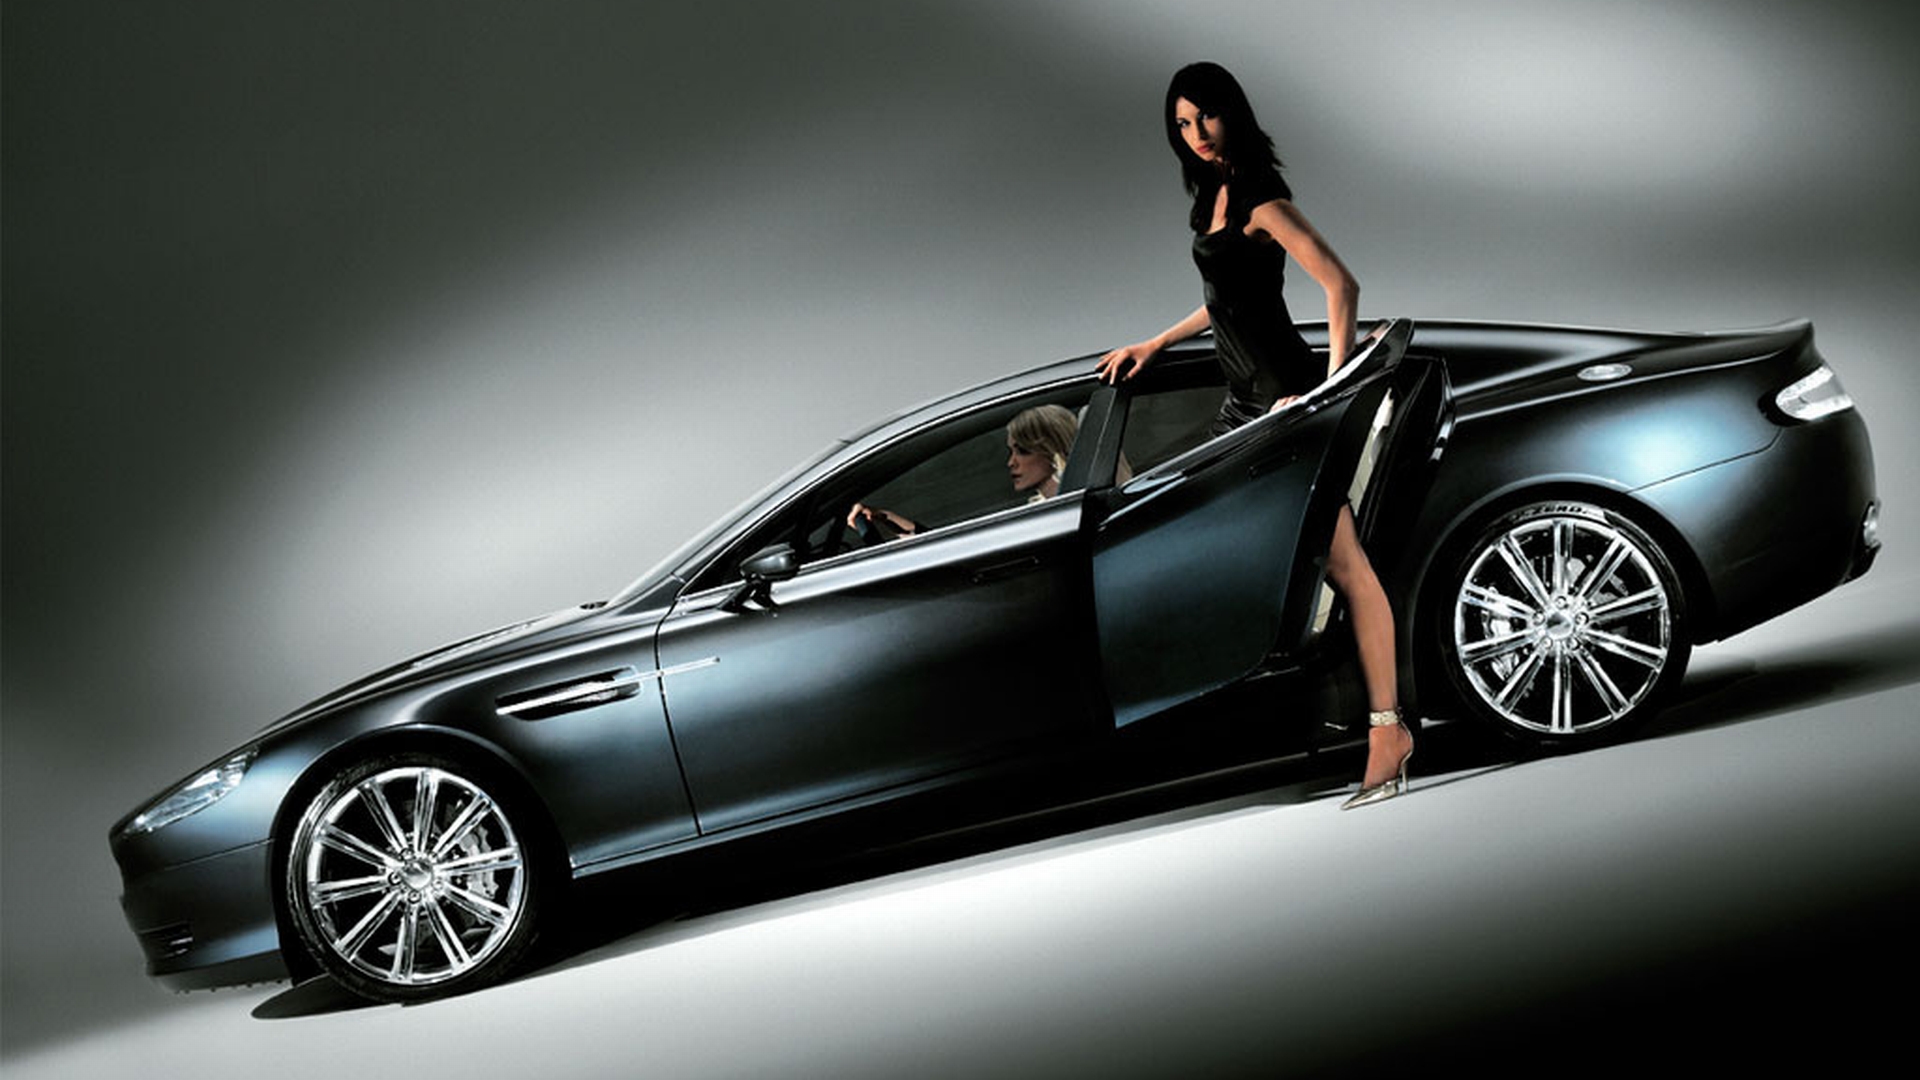 Télécharger des fonds d'écran Aston Martin Rapide HD